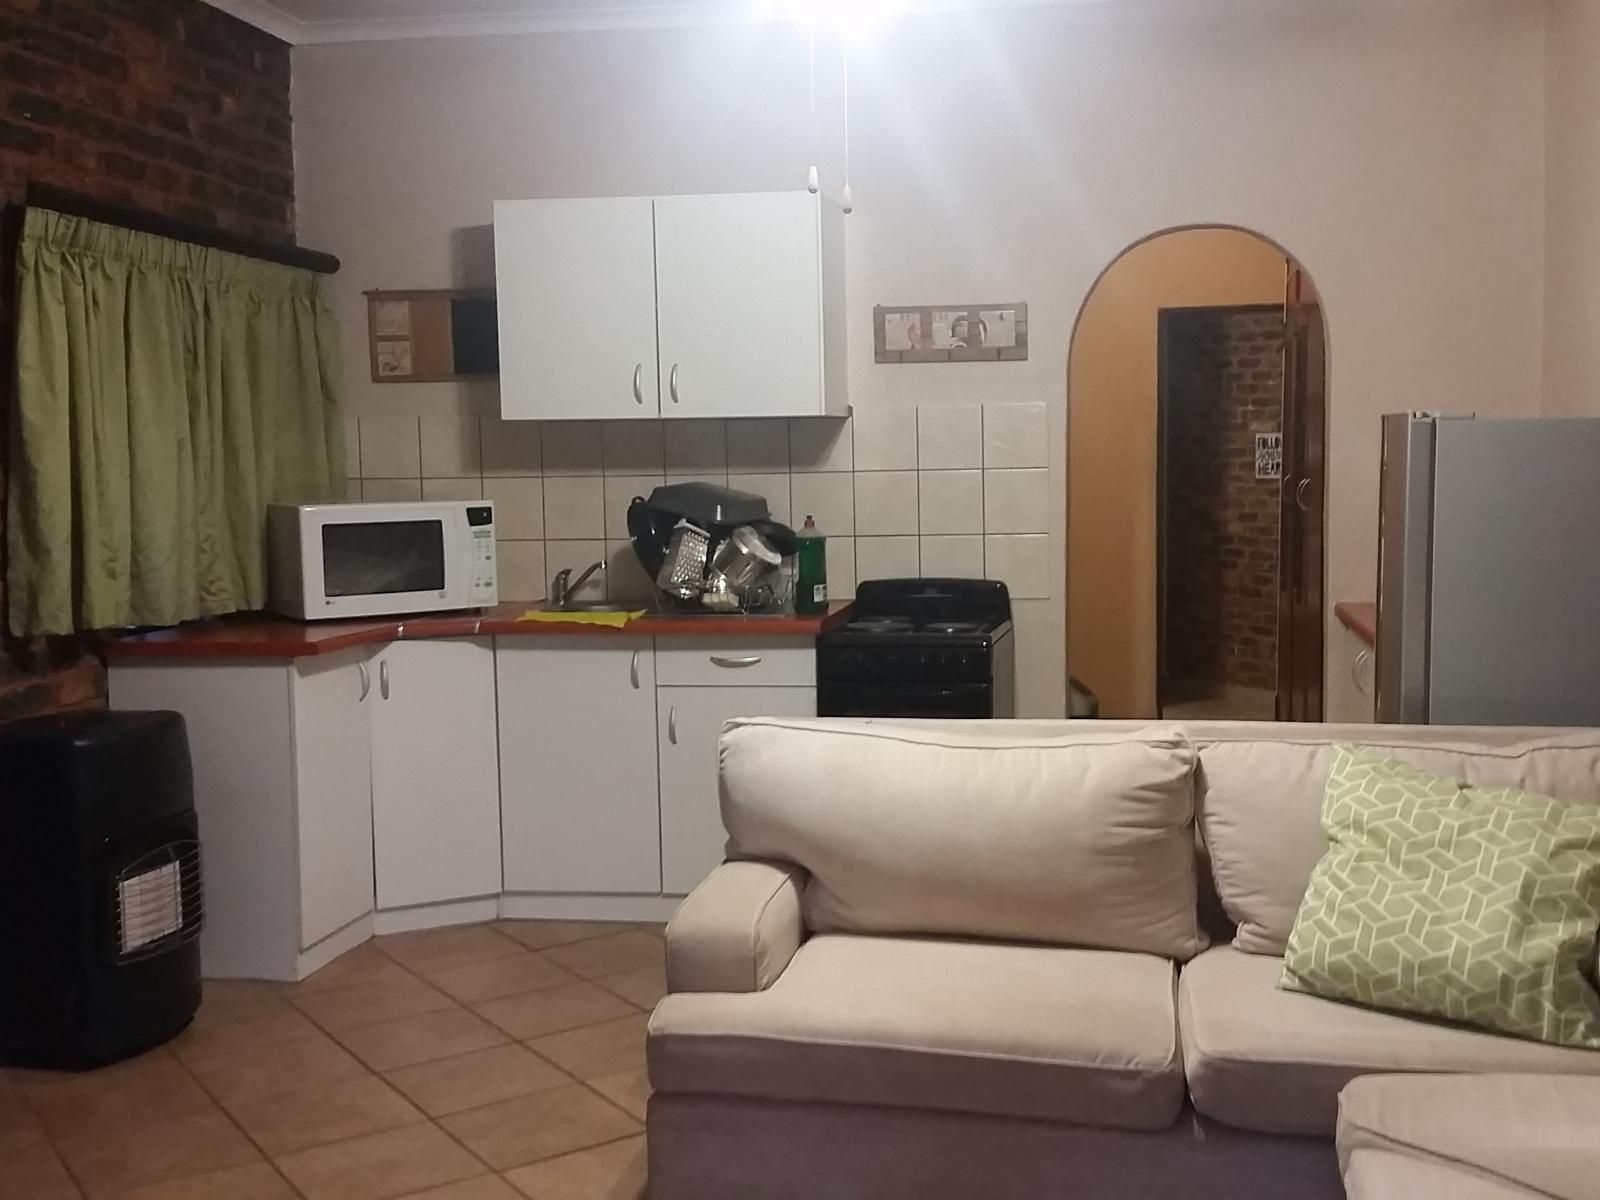 Private Apartments Elardus Park Pretoria Tshwane Gauteng South Africa 